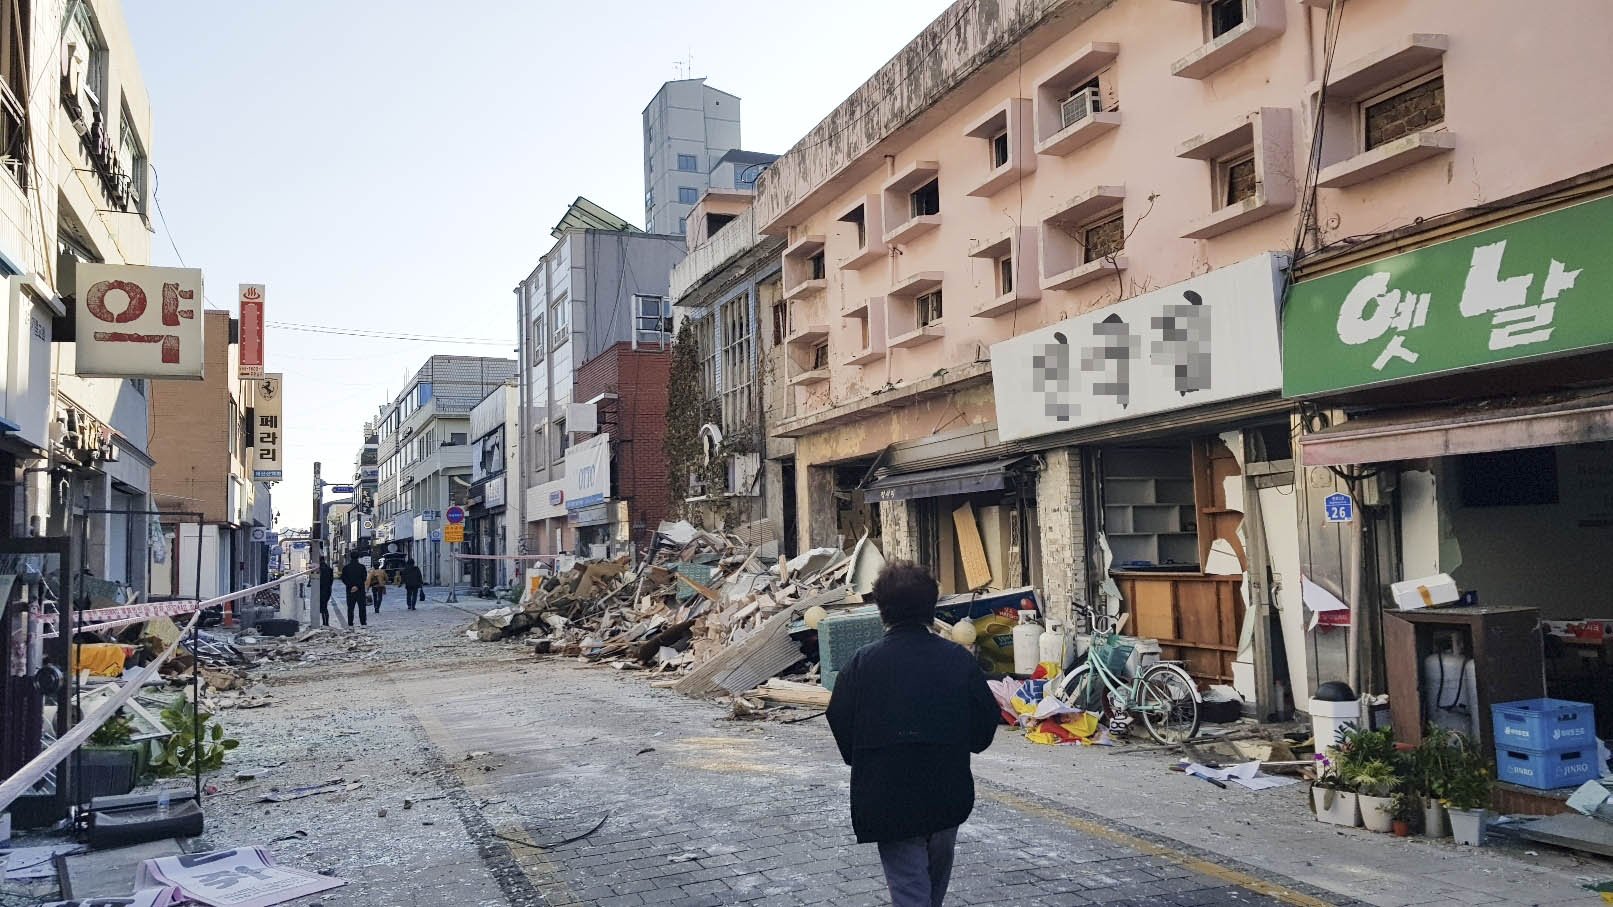  10일 폭발 사고로 잔해물이 가득한 서산 상가 거리 모습. 연합뉴스